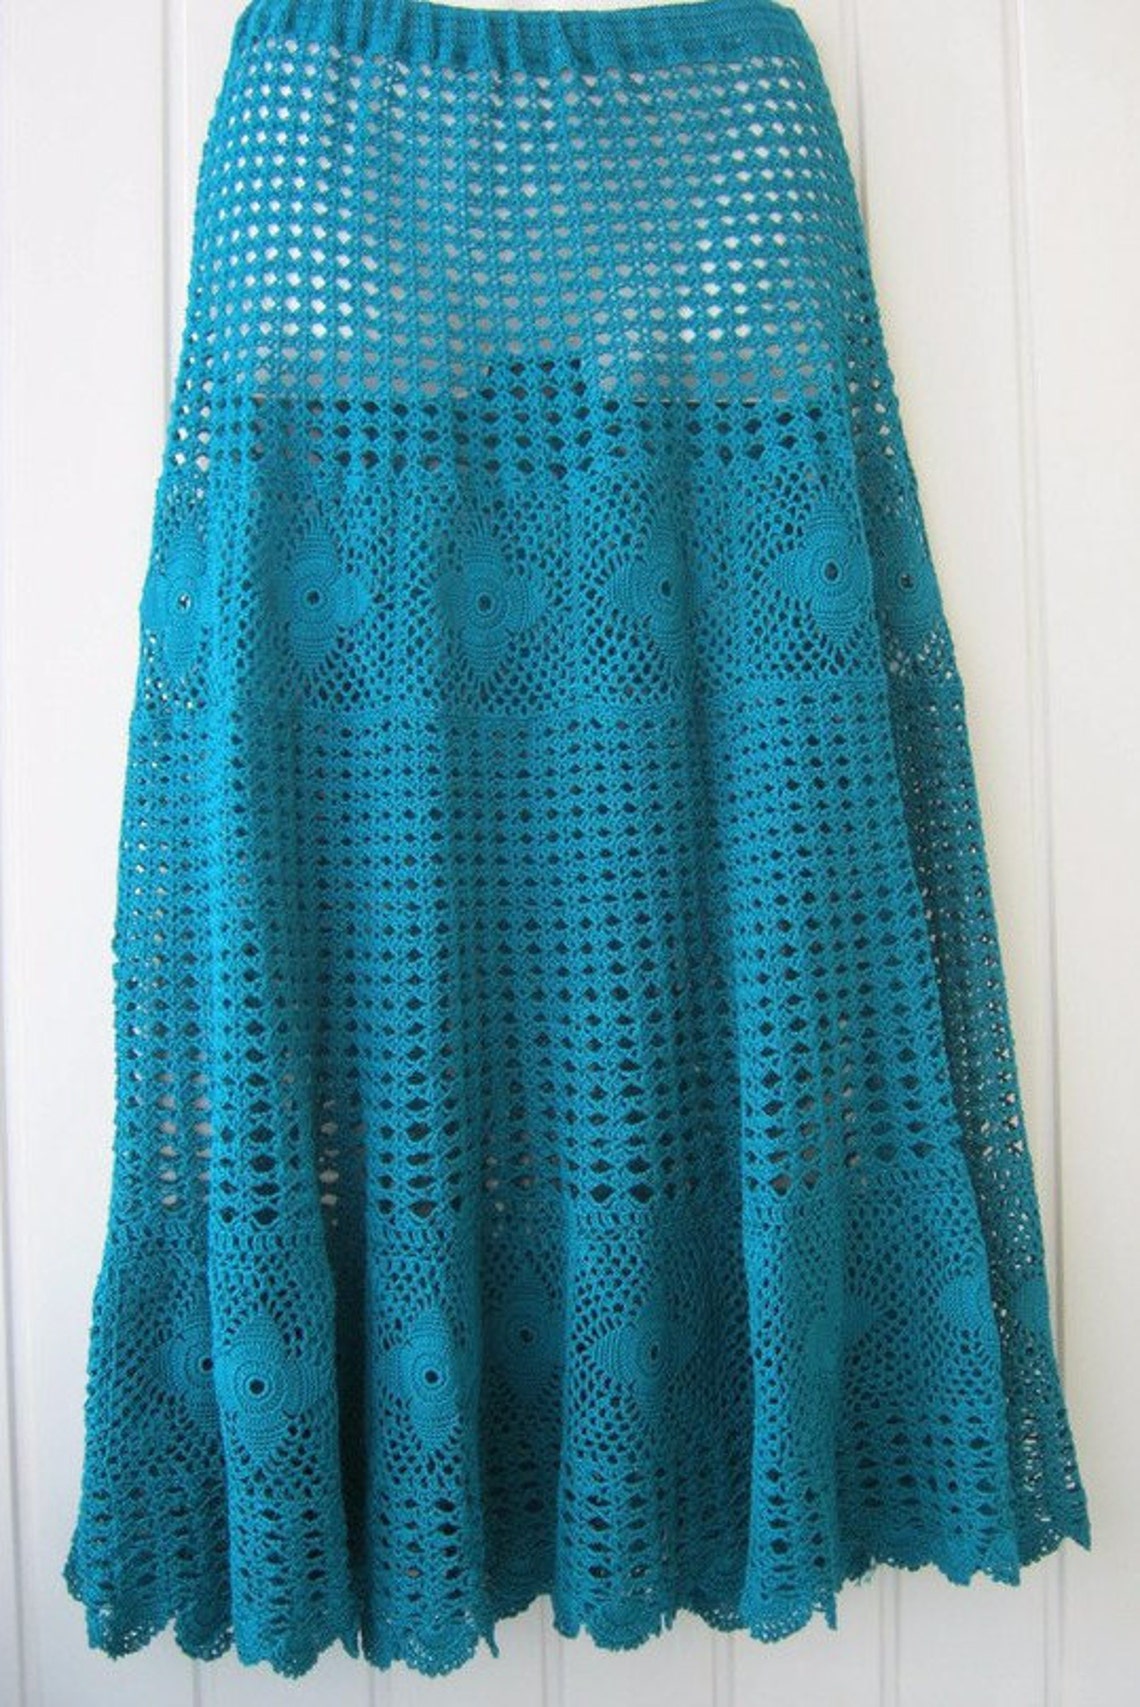 Boho clothes Skirt lace Skirt green Skirt handmade Long | Etsy